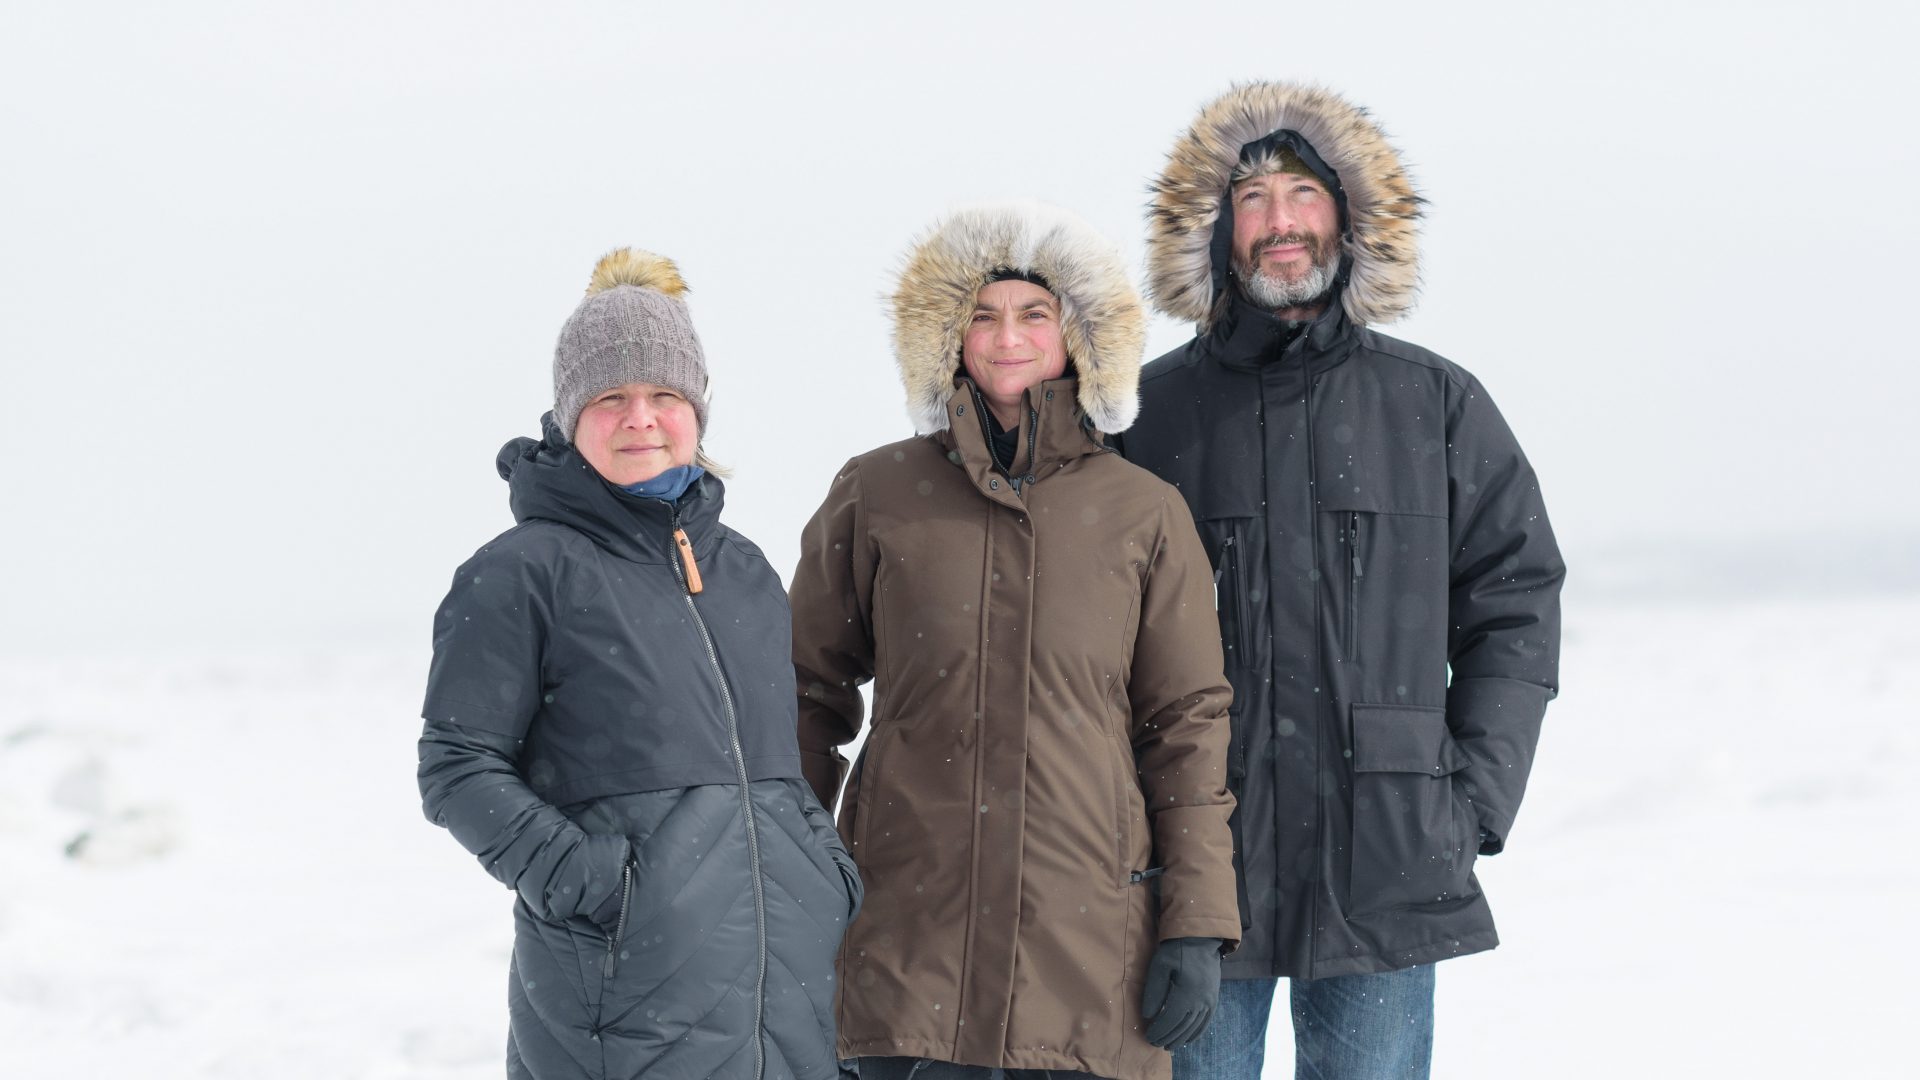 8 manteaux d'hiver parfaits pour survivre aux grands froids imminents